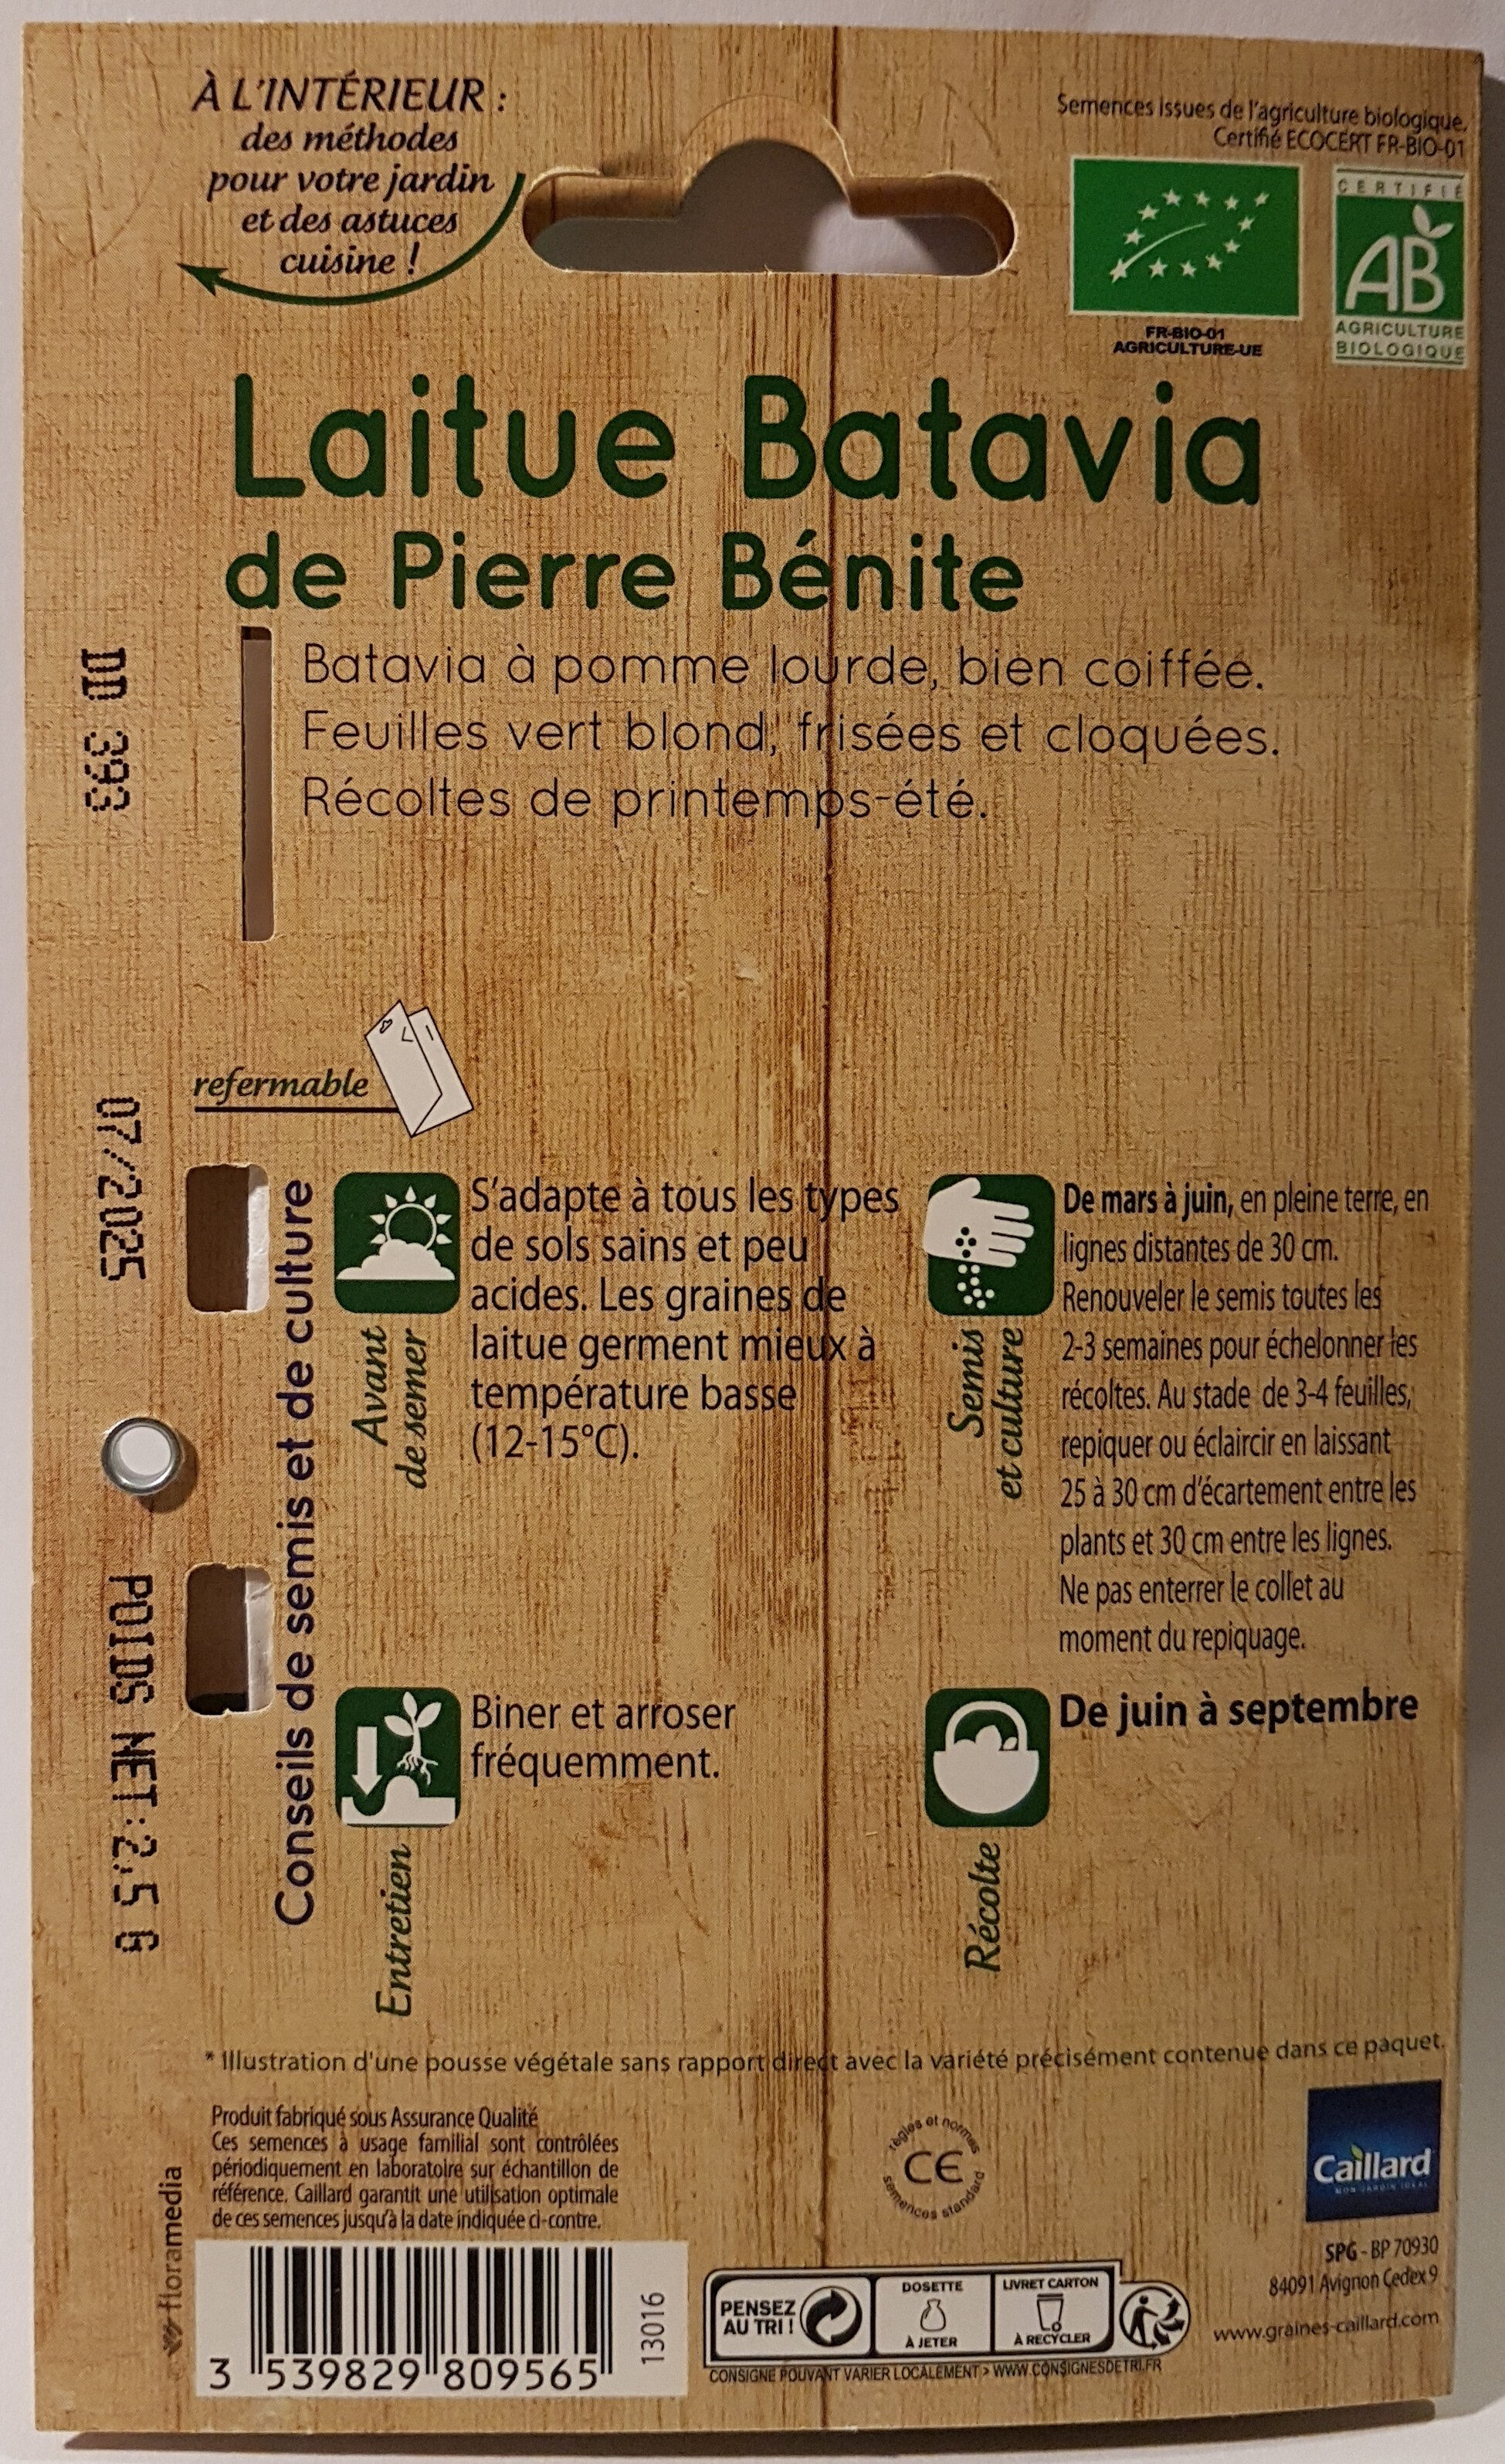 Laitue Batavia de Pierre Bénite - Ingredients - en